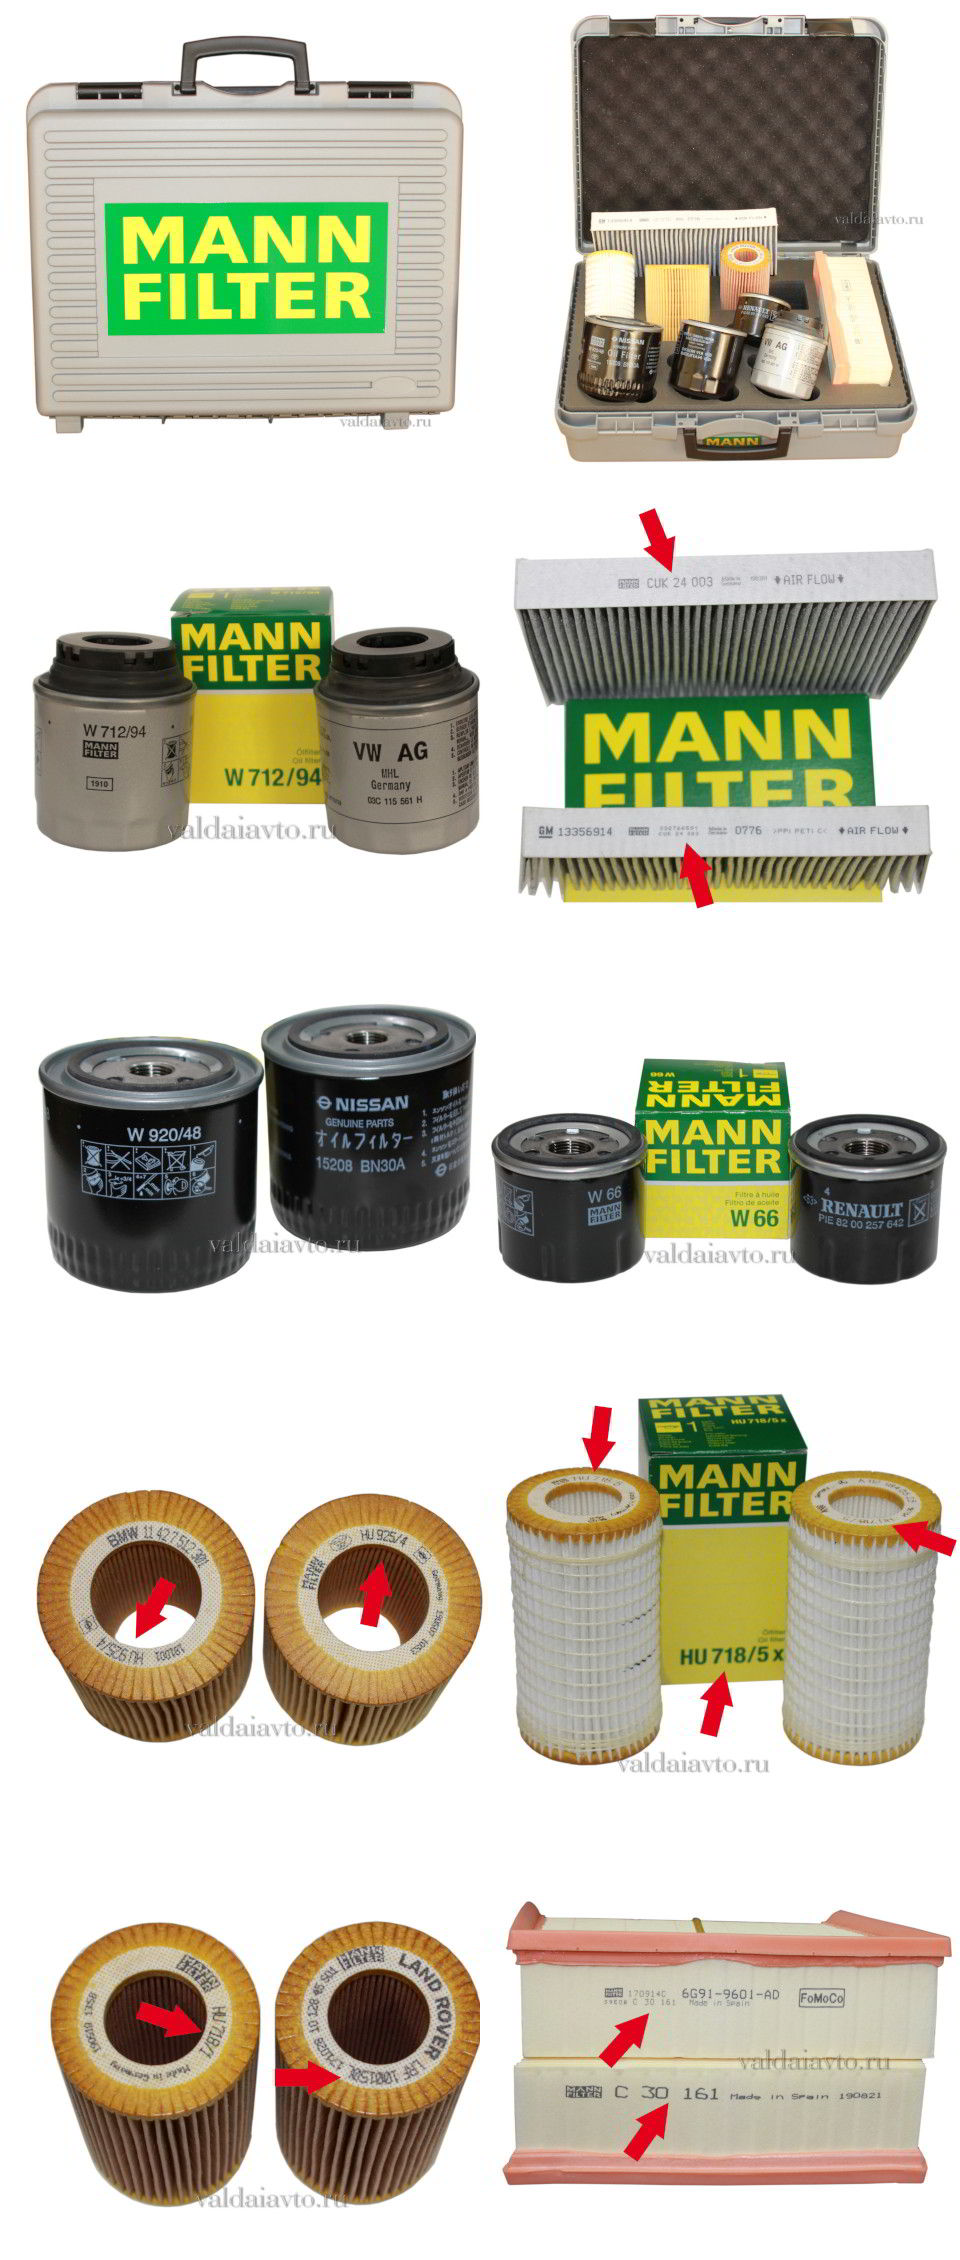 MANN-FILTER матрица оригинальных фильтров